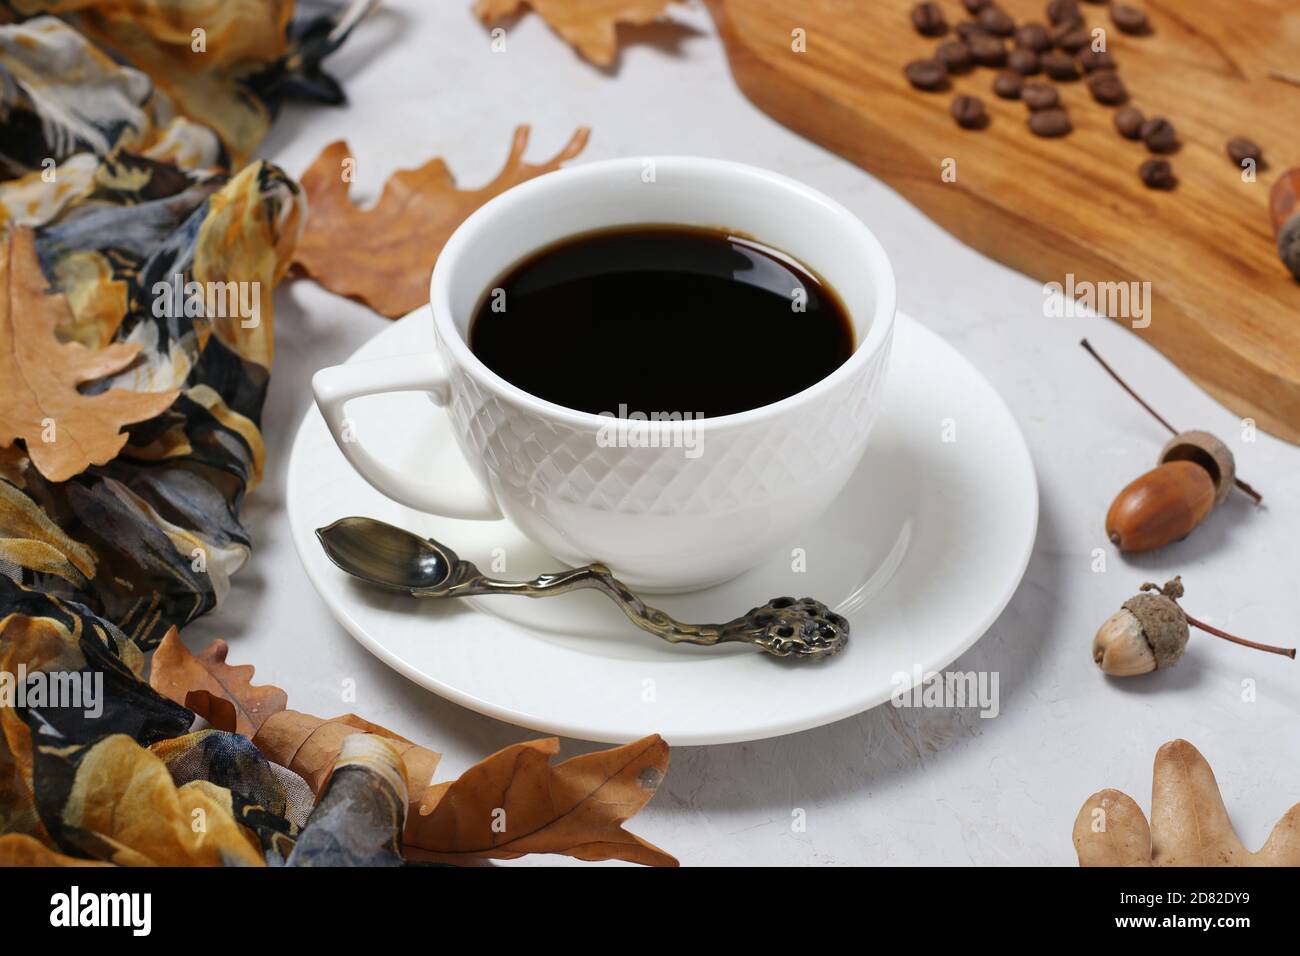 Senza caffeina immagini e fotografie stock ad alta risoluzione - Alamy